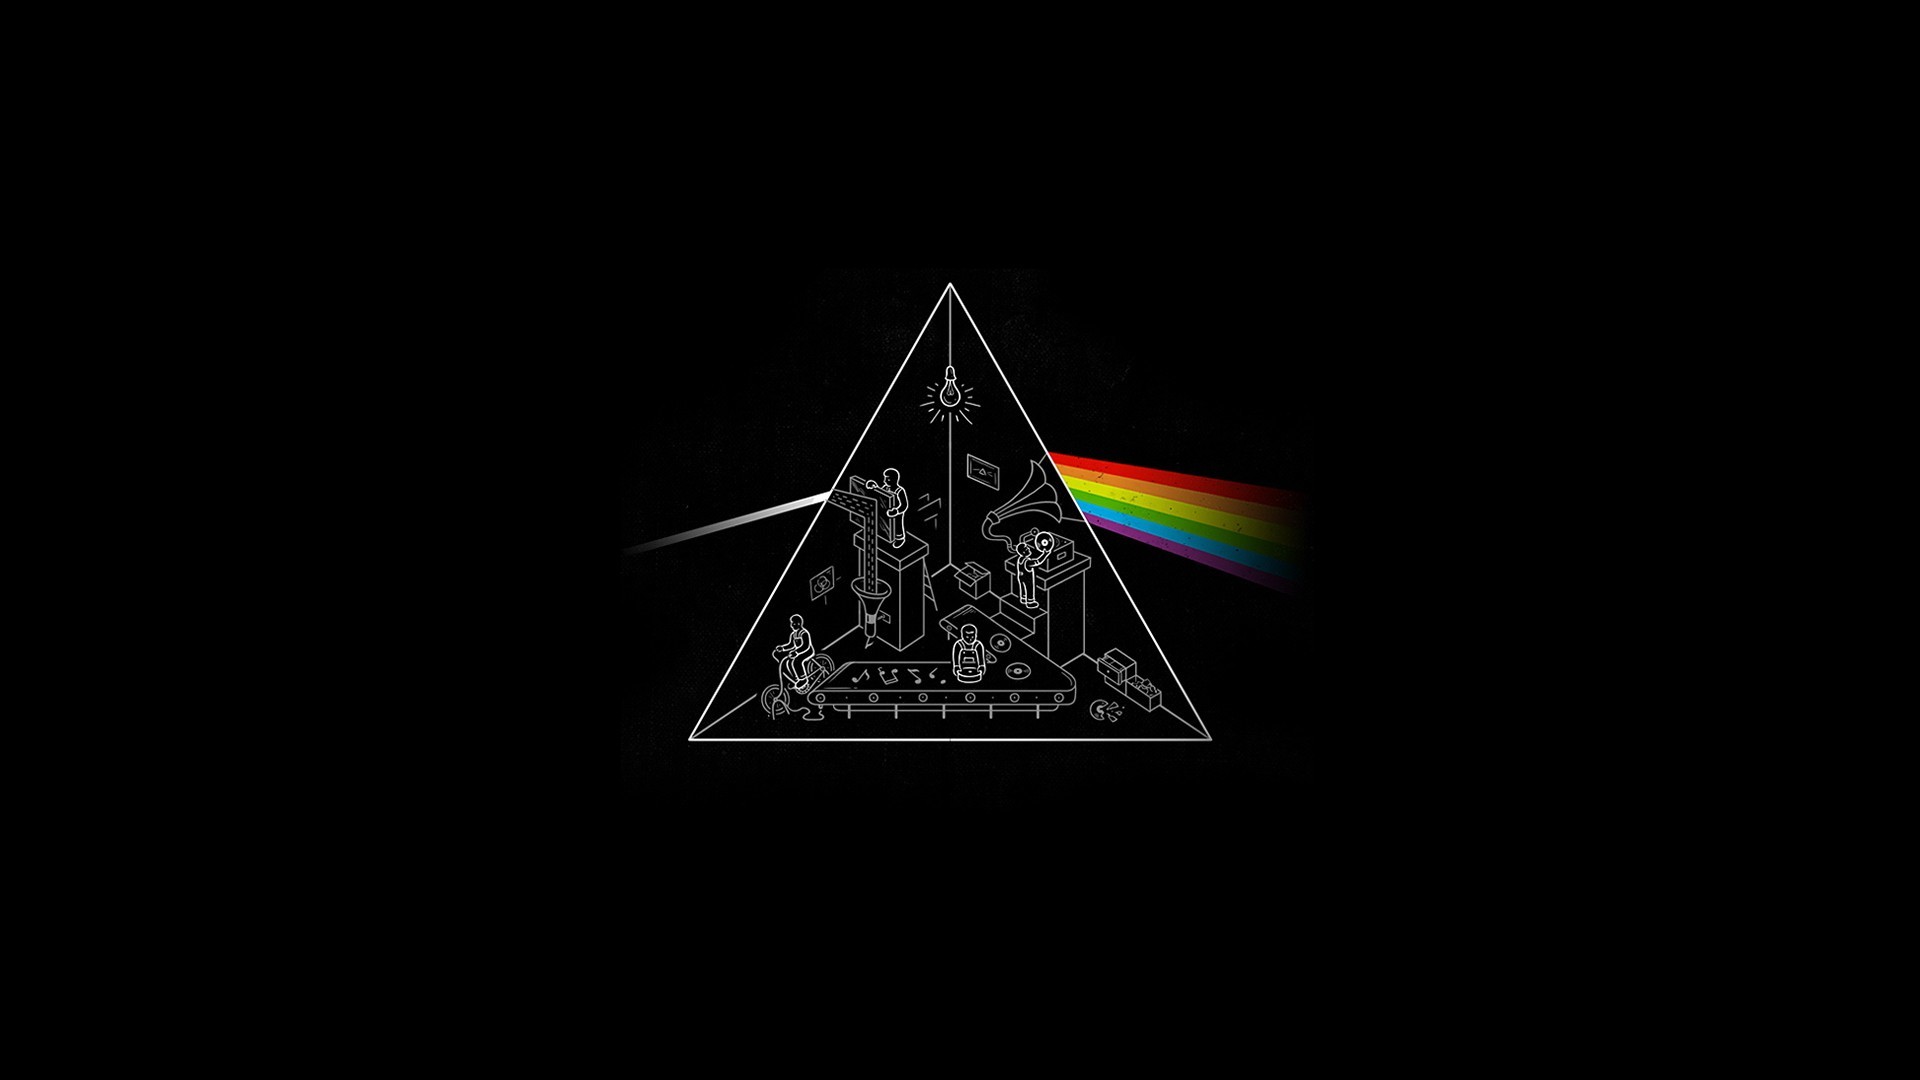 1920x1080 Pink Floyd Wallpaper 4k Pink Floyd Wallpaper 1080p